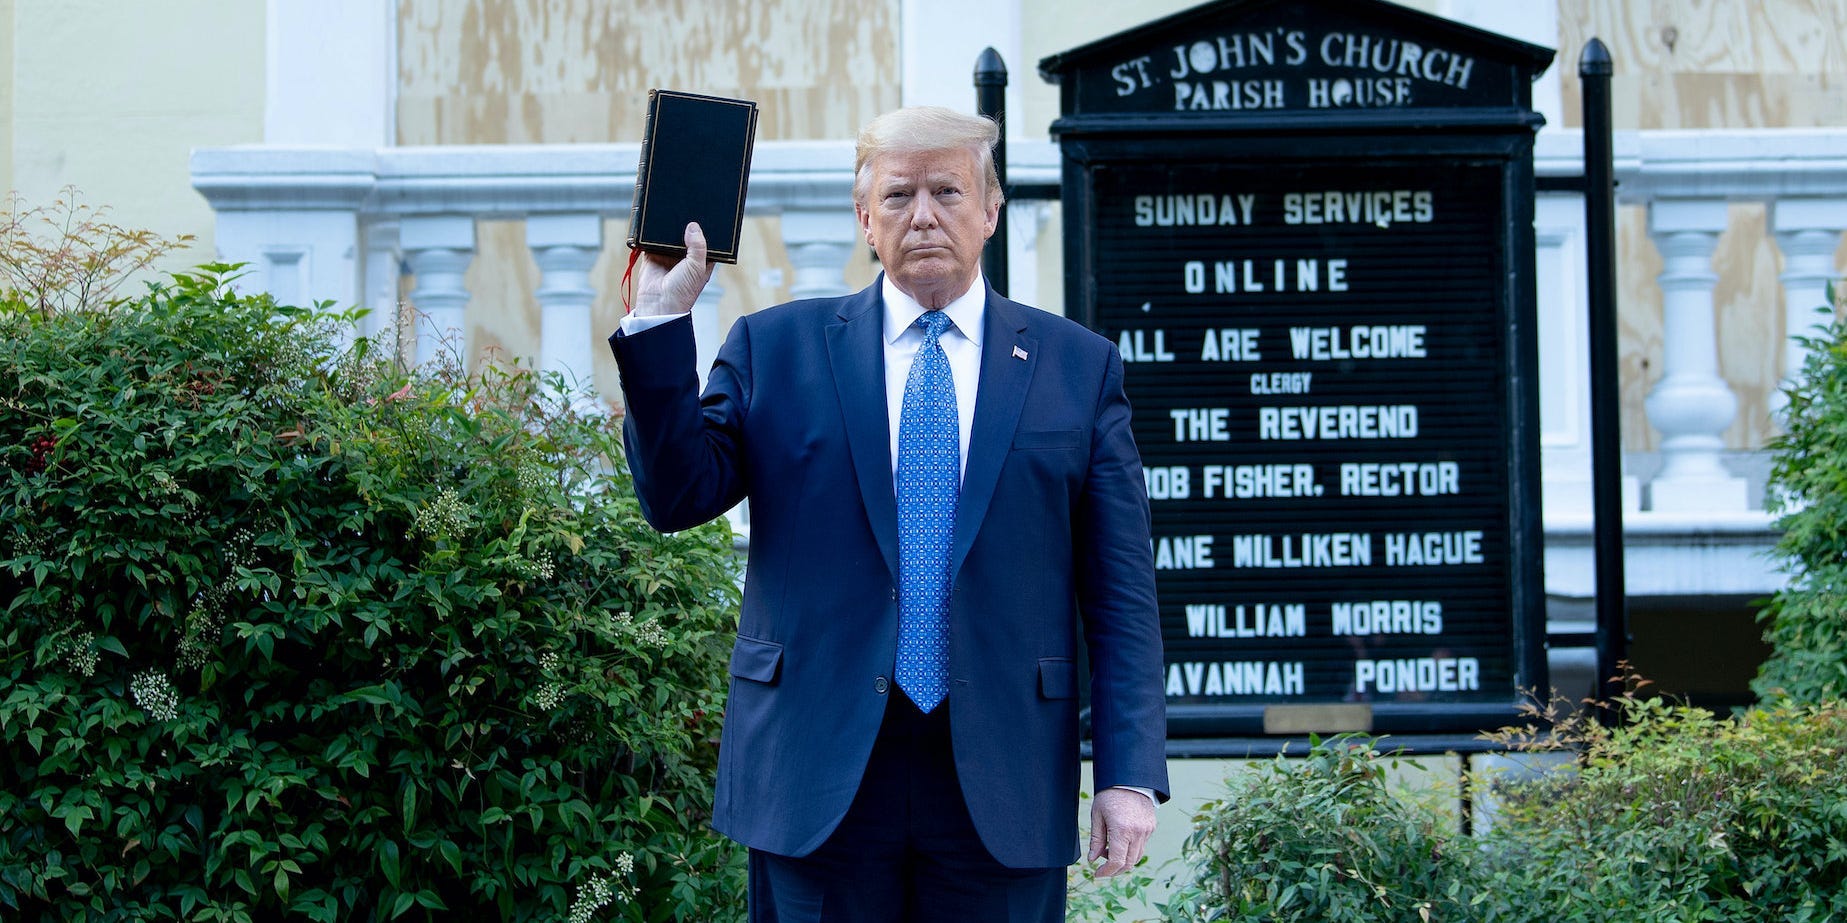 President Donald Trump houdt een bijbel vast bij een bliksembezoek aan de gesloten St. John's Church in Washington D.C. Voor de fotoshoot werd de straat vol demonstranten met geweld ontruimd. Foto: Brendan Smialowski/AFP via Getty Images